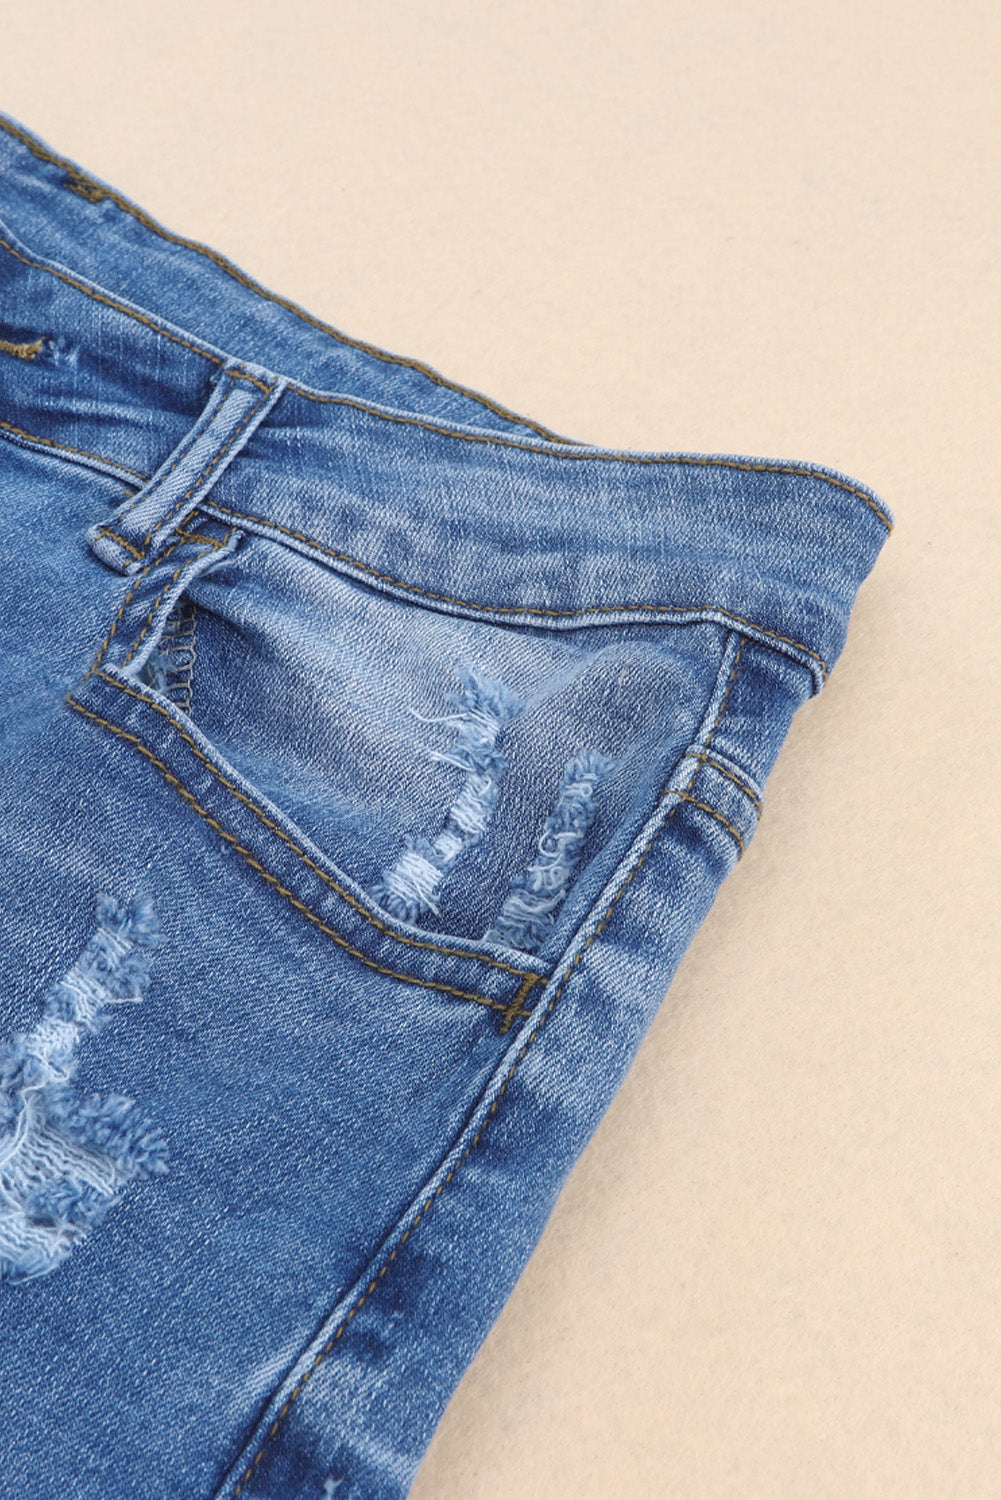 Sky Blue Vintage Distressed High Waist Pocket Denim Shorts